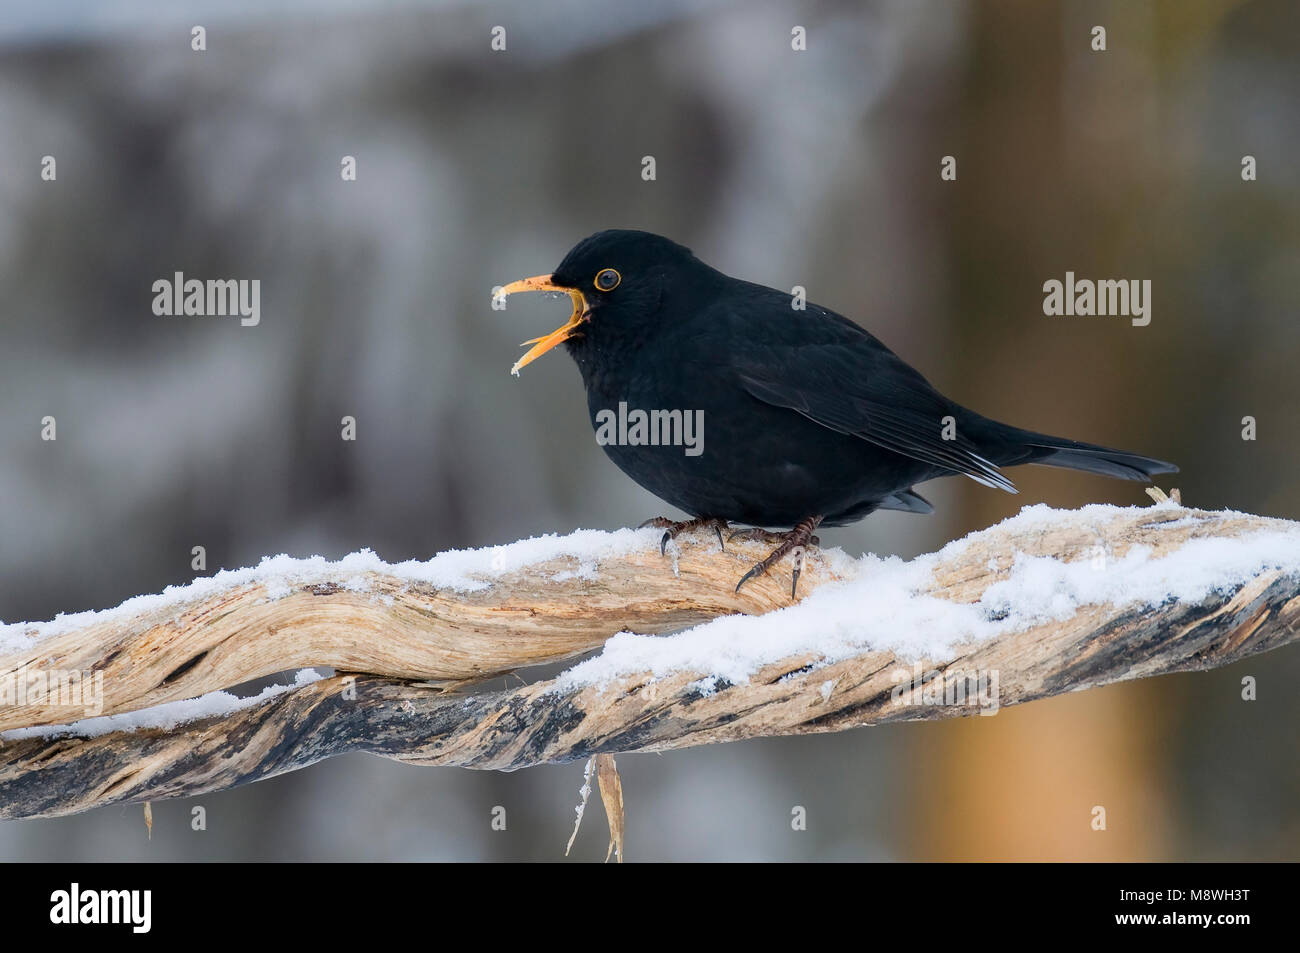 Merel roepend in de winter; European Blackbird calling in winter Stock Photo